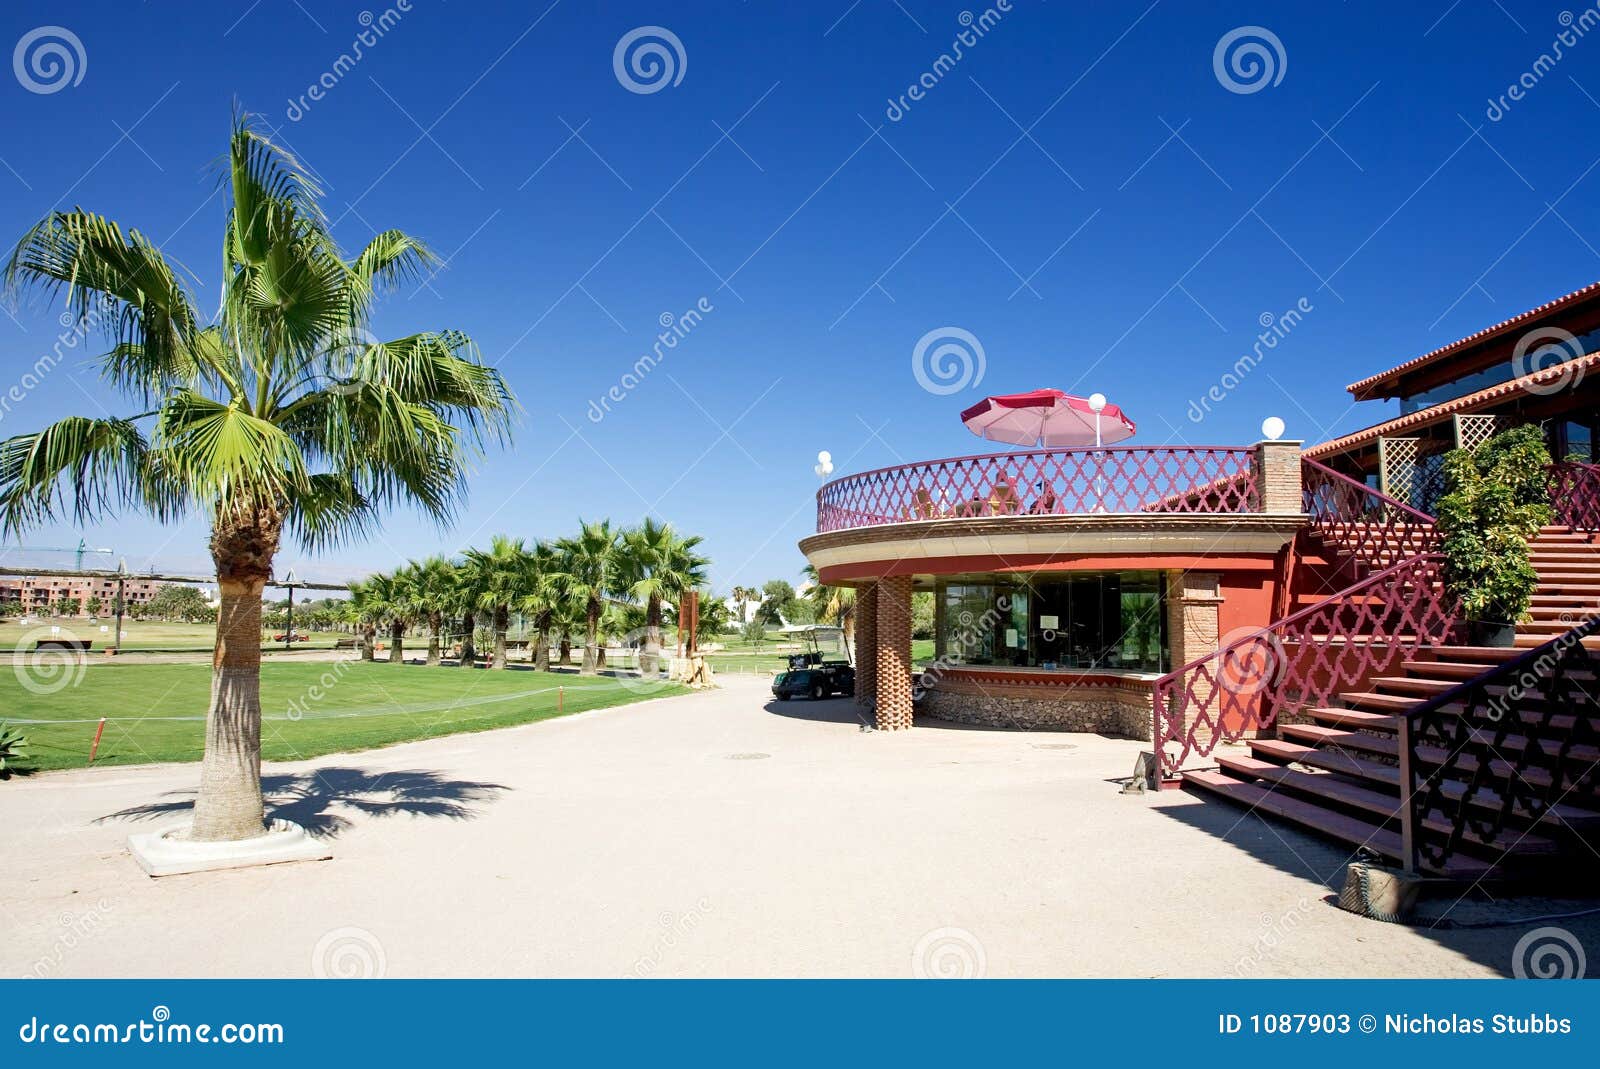 playa serena golf clubhouse on the costa del almeria